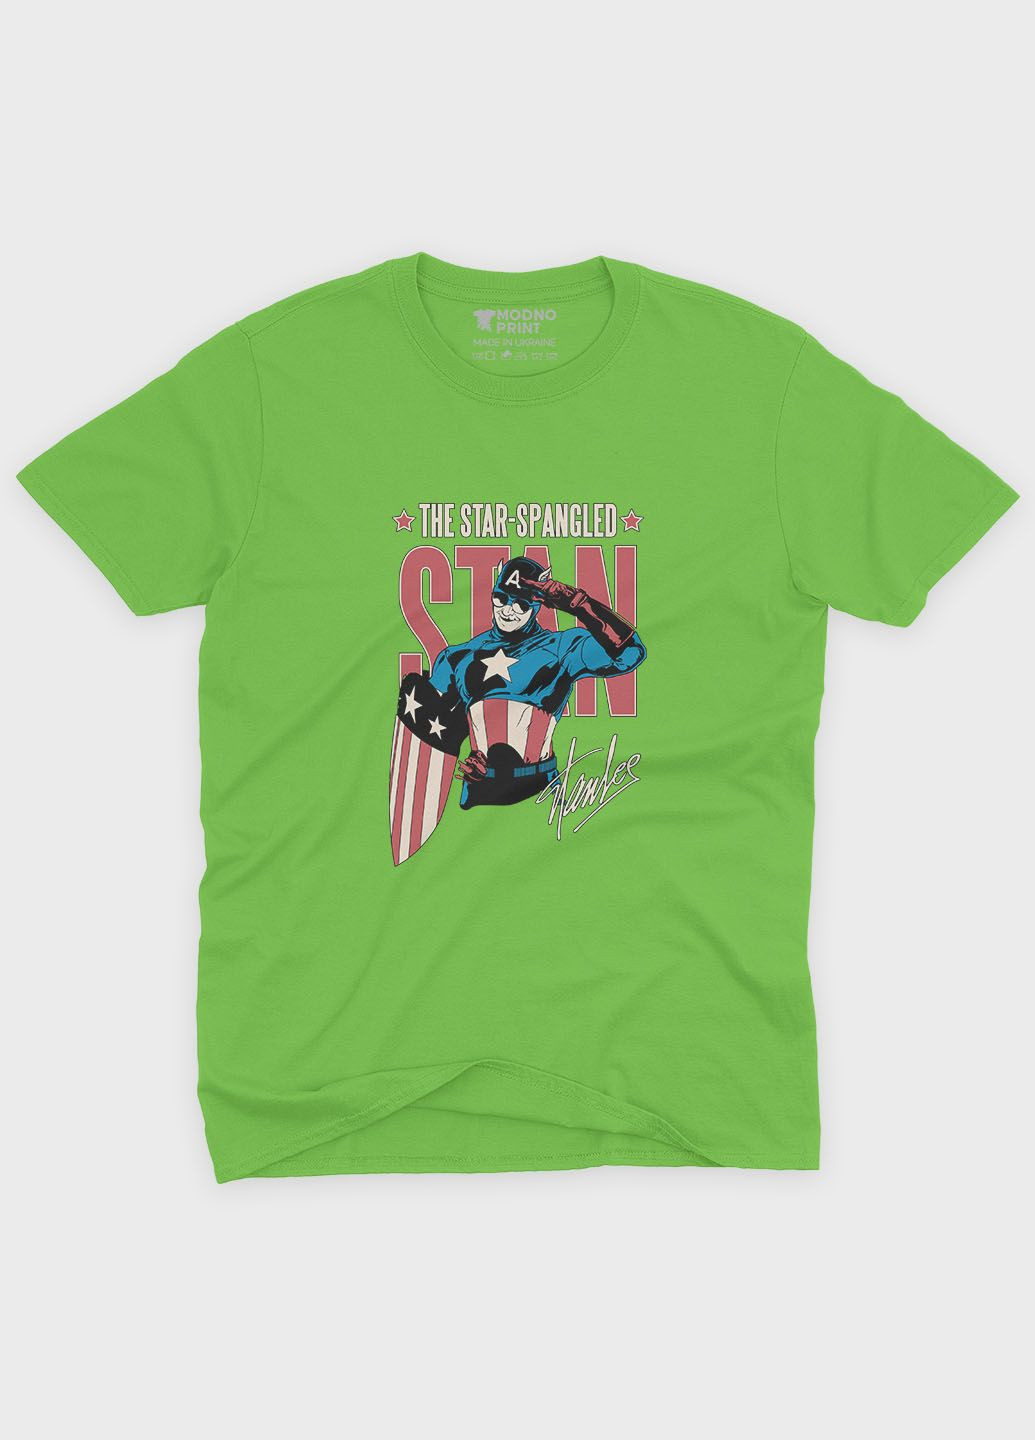 Салатовая демисезонная футболка для мальчика с принтом супергероя - капитан америка (ts001-1-kiw-006-022-002-b) Modno